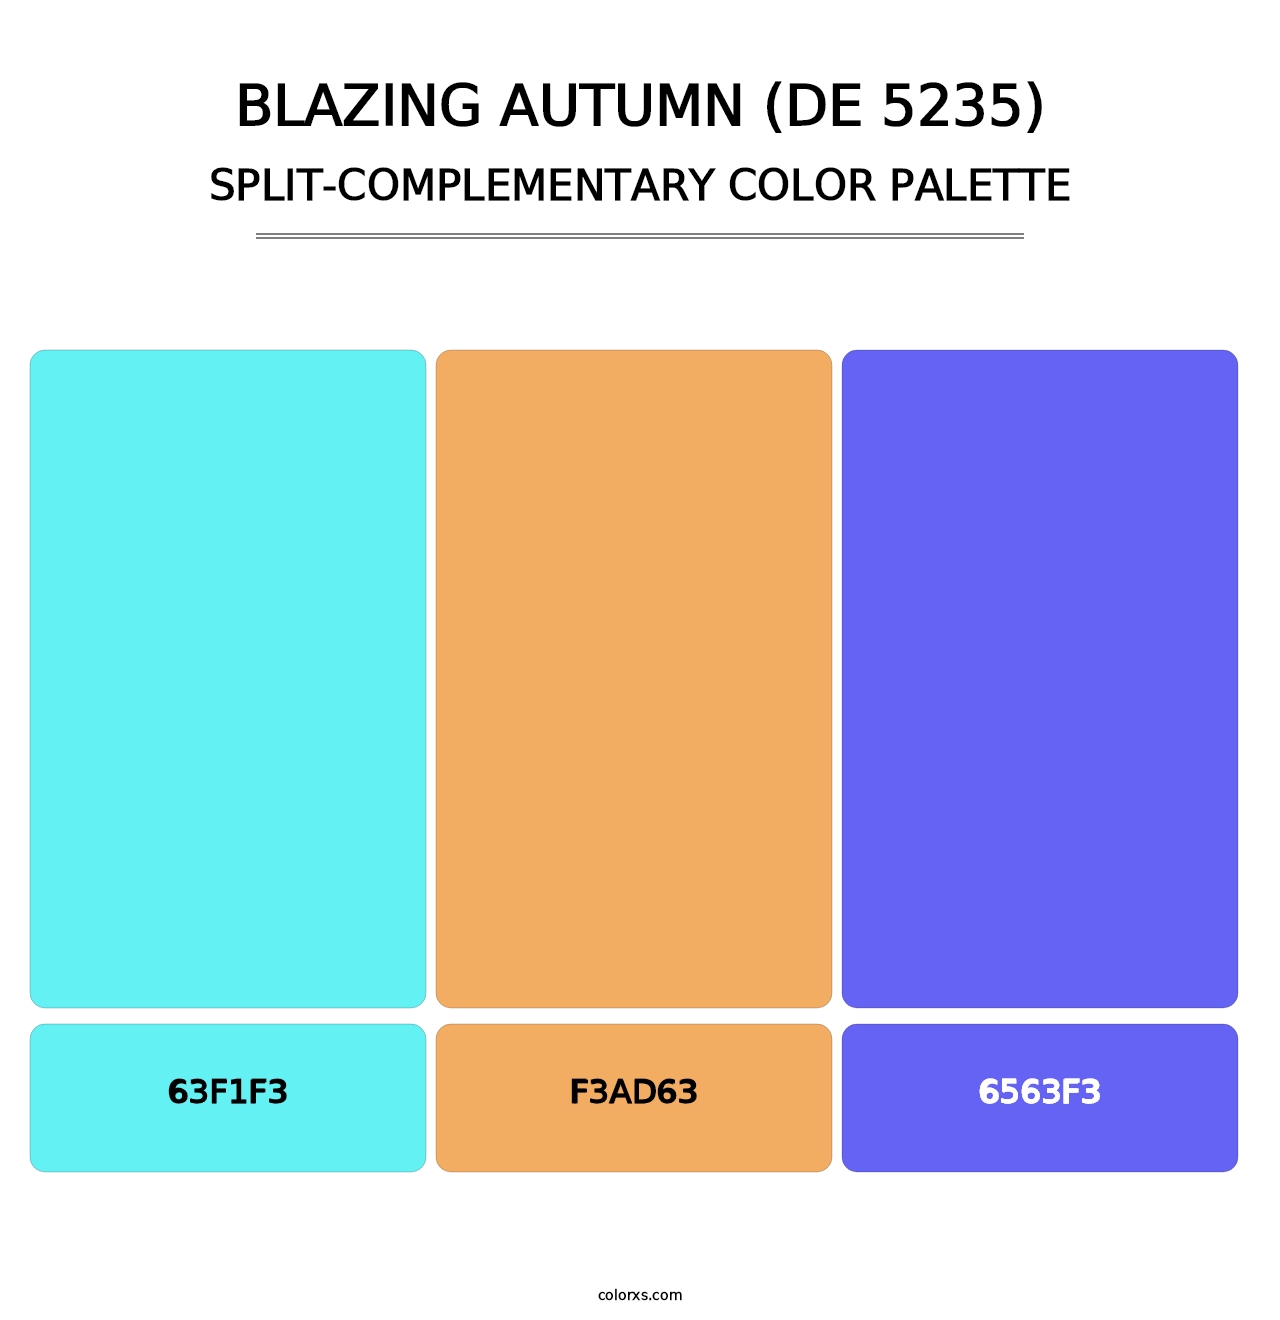 Blazing Autumn (DE 5235) - Split-Complementary Color Palette